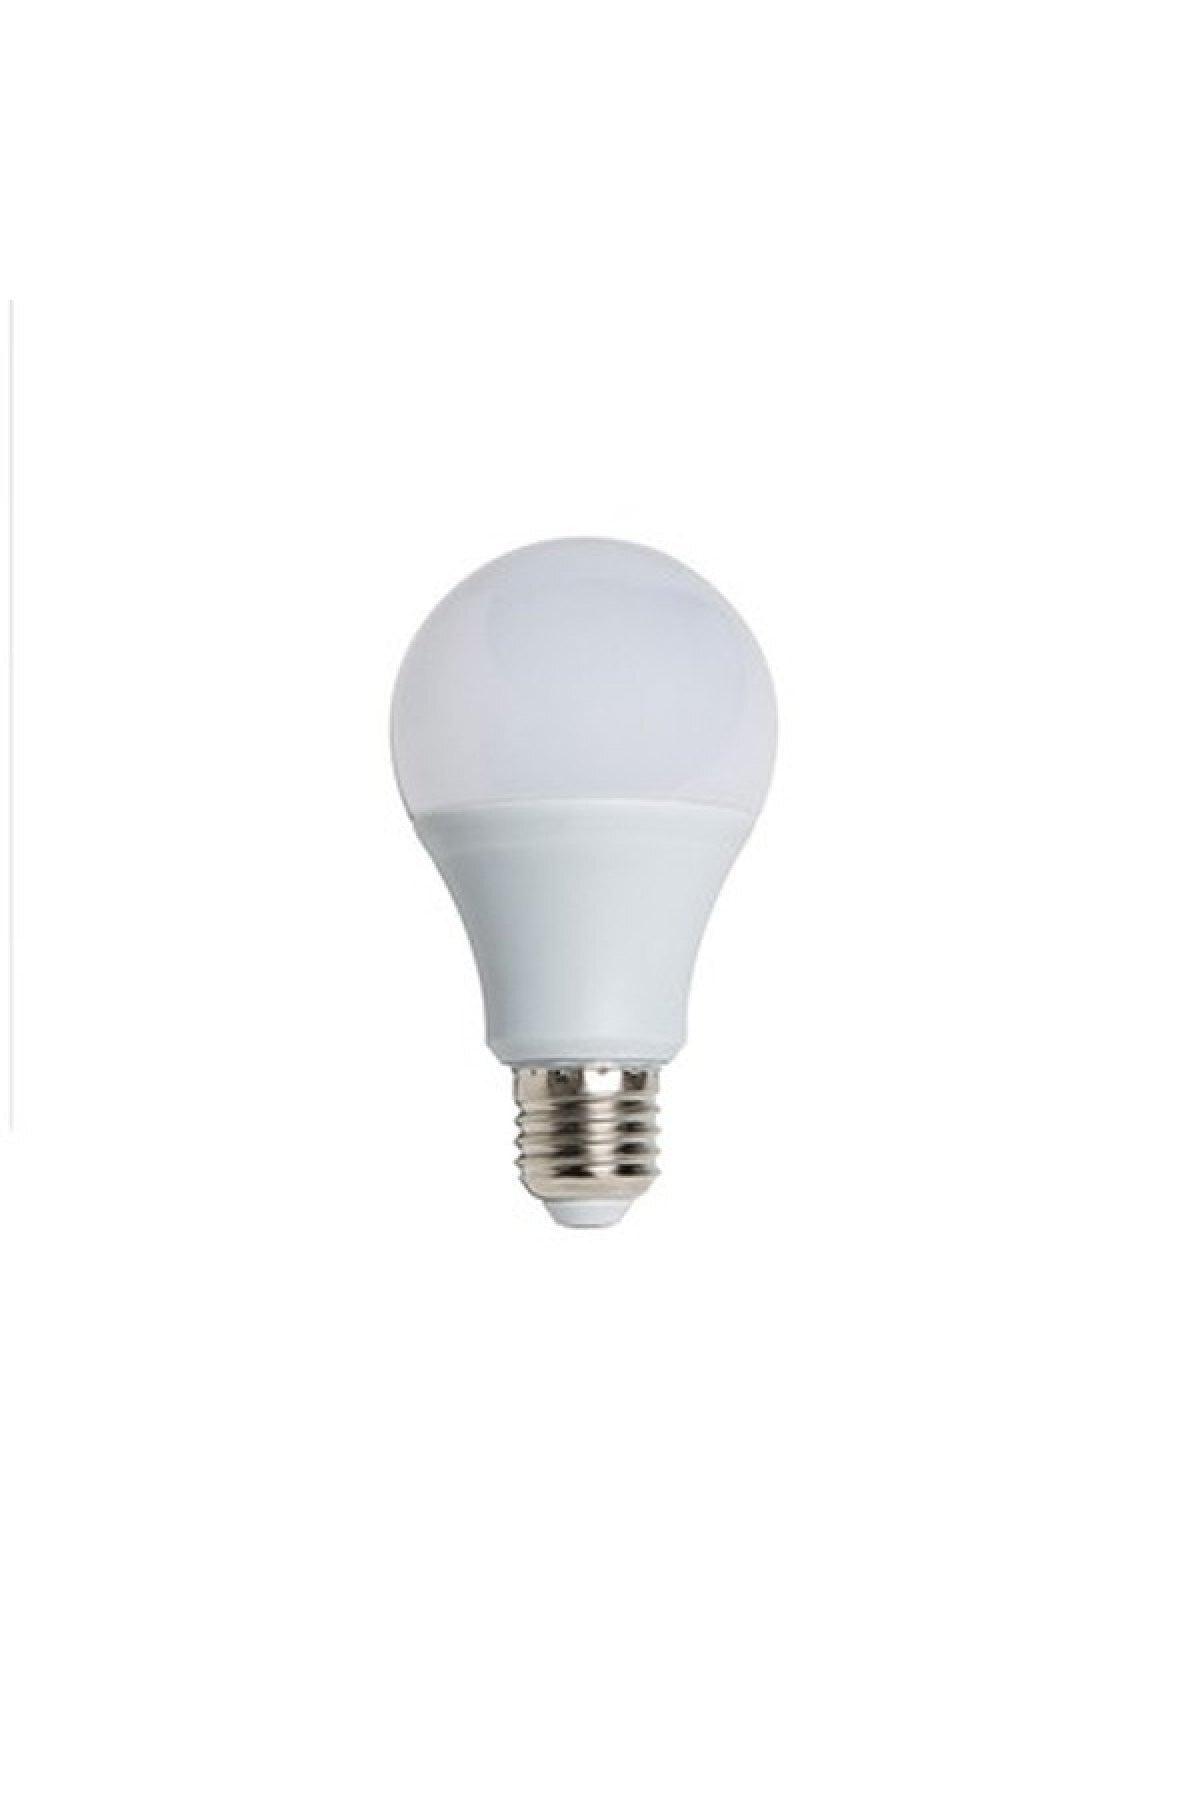 8.6 W Led Bulb Light 6500k 10pcs